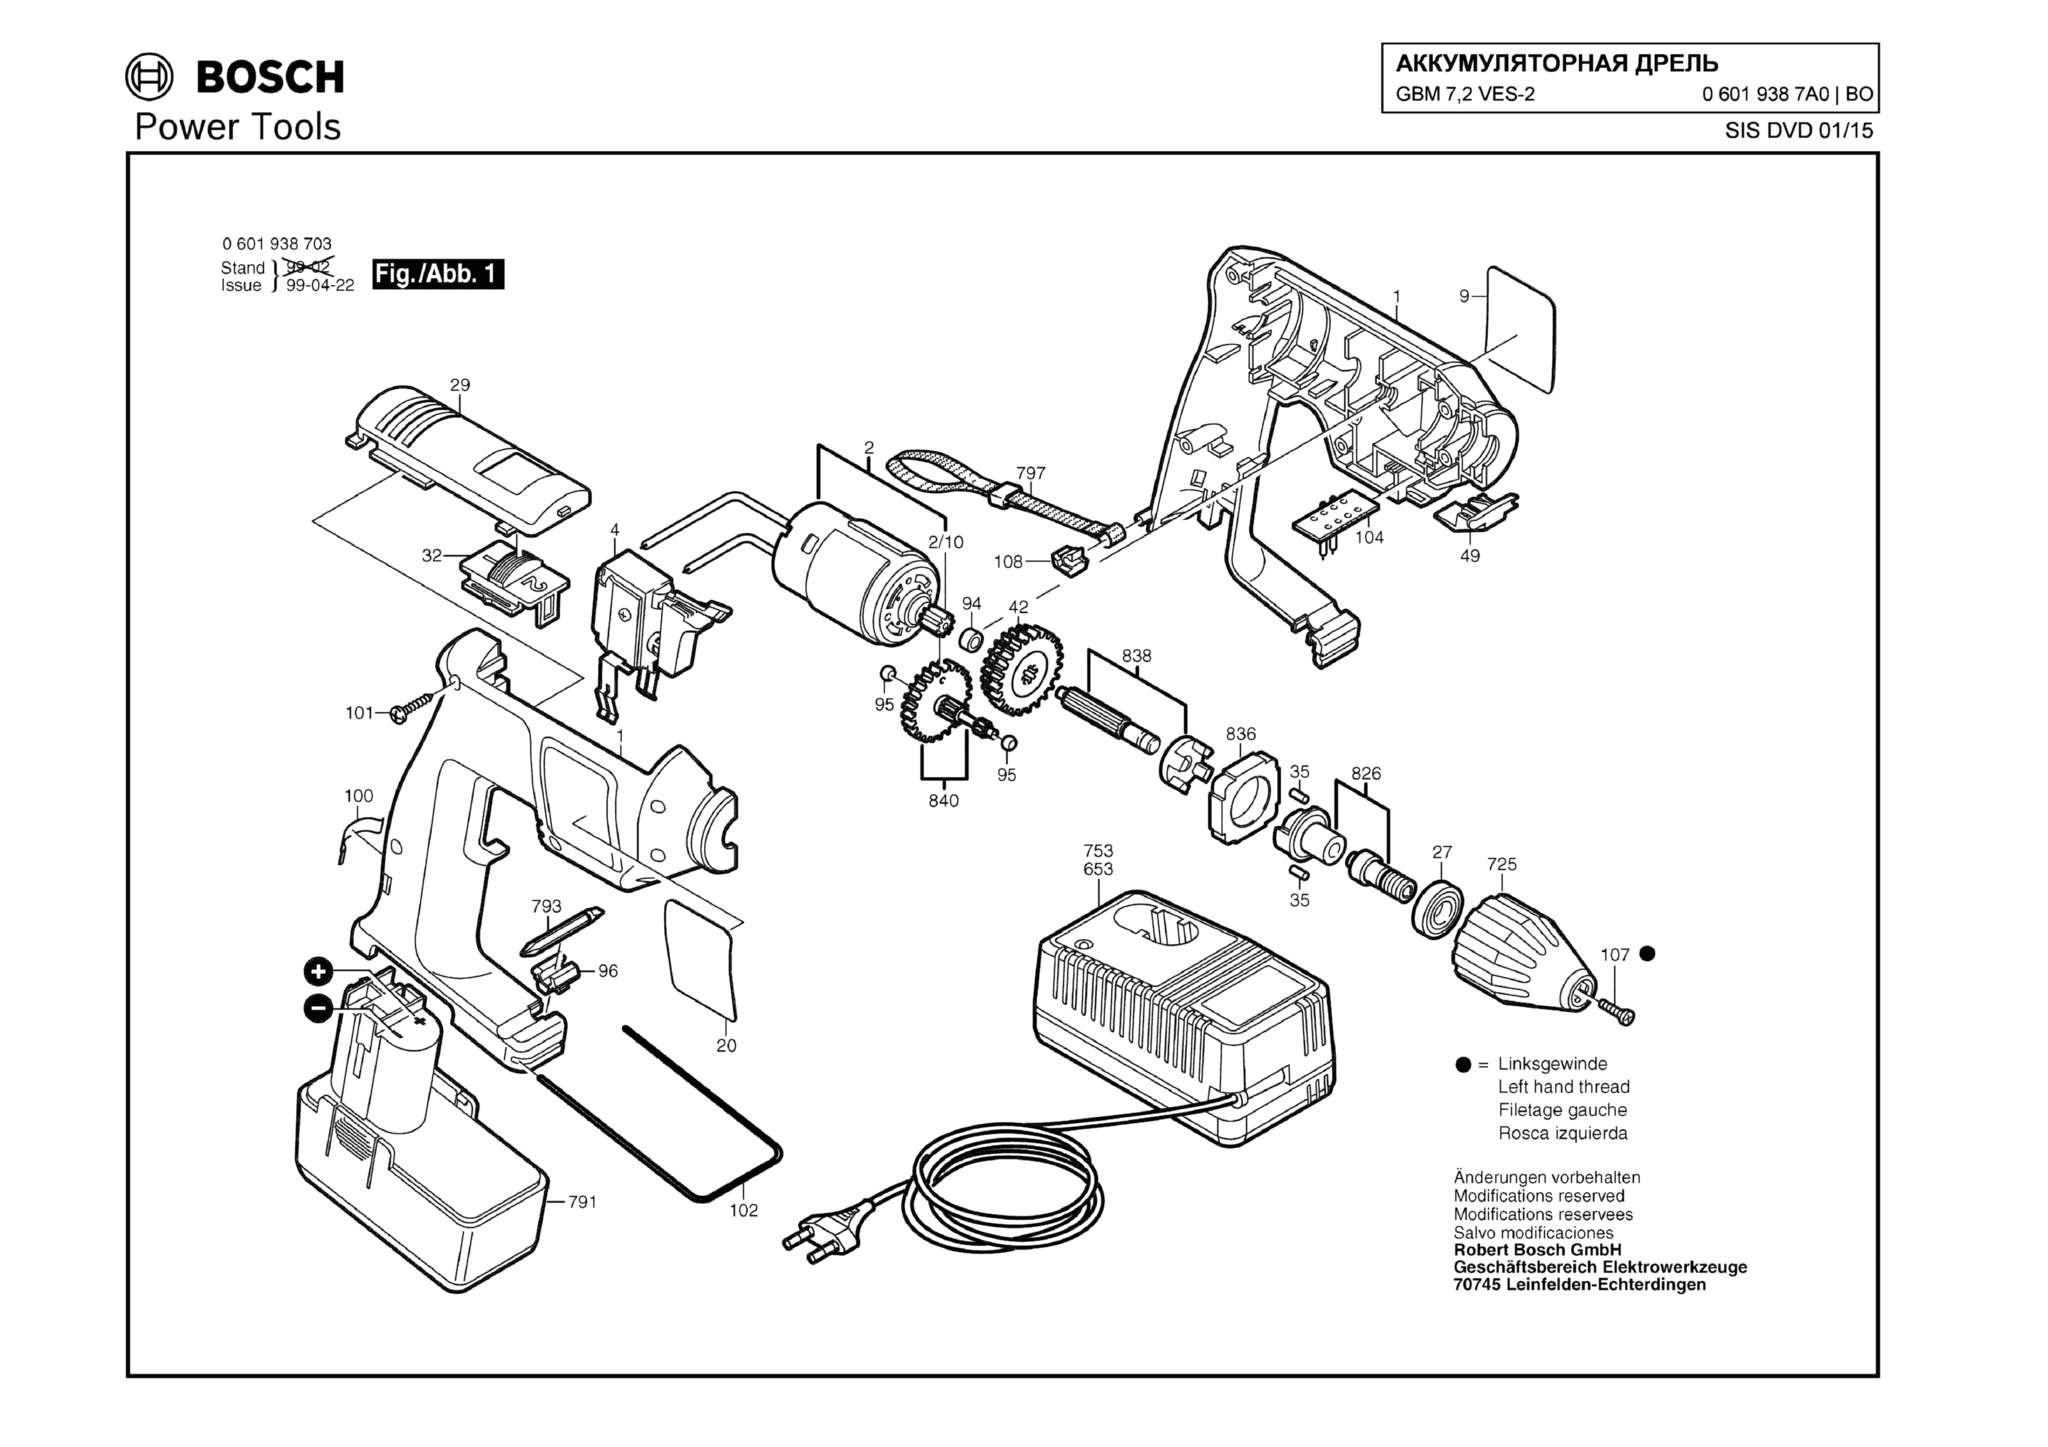 Запчасти, схема и деталировка Bosch GBM 7,2 VES-2 (ТИП 06019387A0)